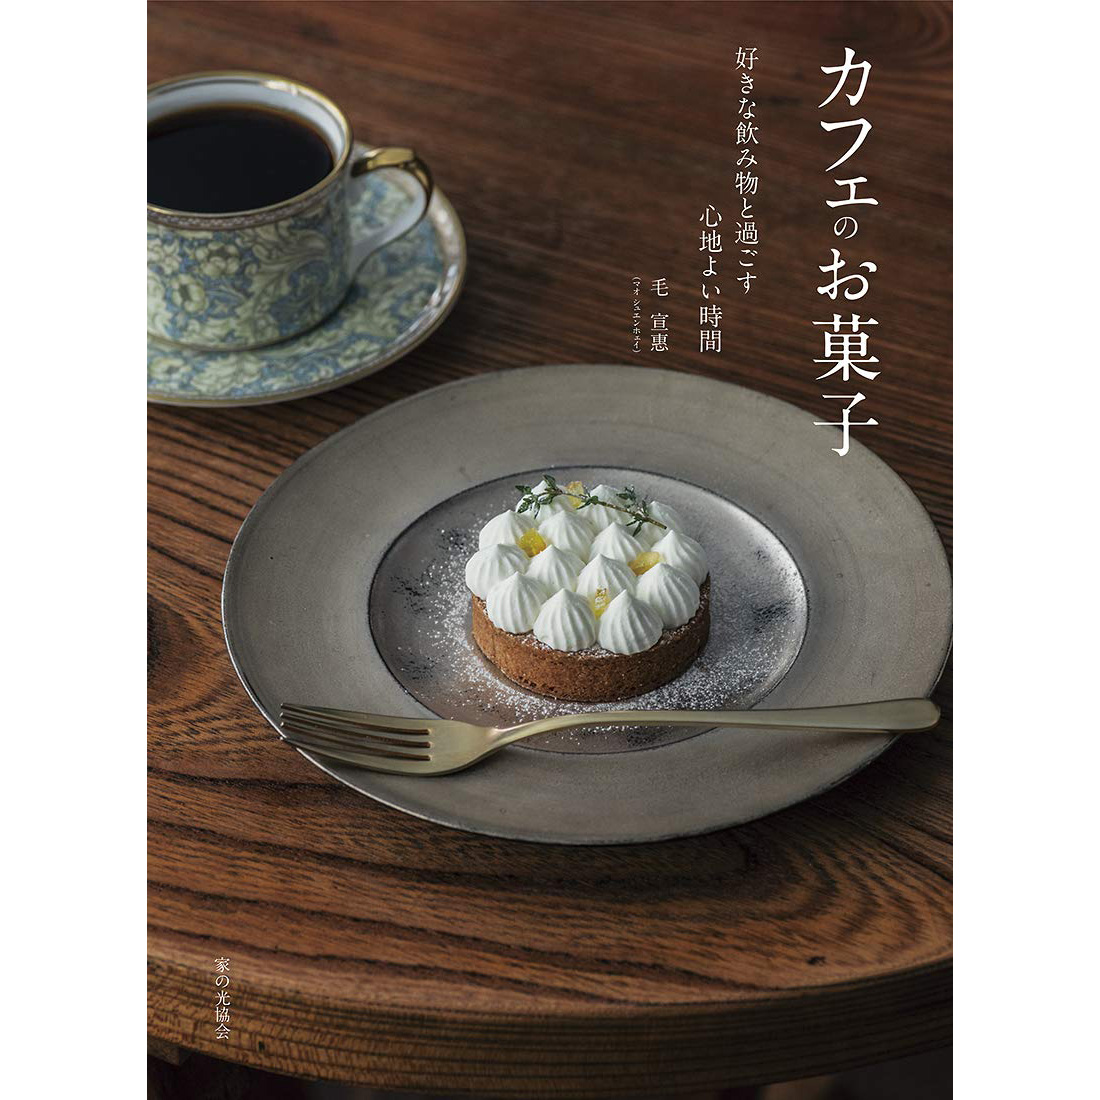 现货 毛宣惠 カフェのお菓子 泡芙糕点 芝士蛋糕 日本咖啡厅甜品 西式点心食谱图书 好きな飲み物と過ごす心地よい時間